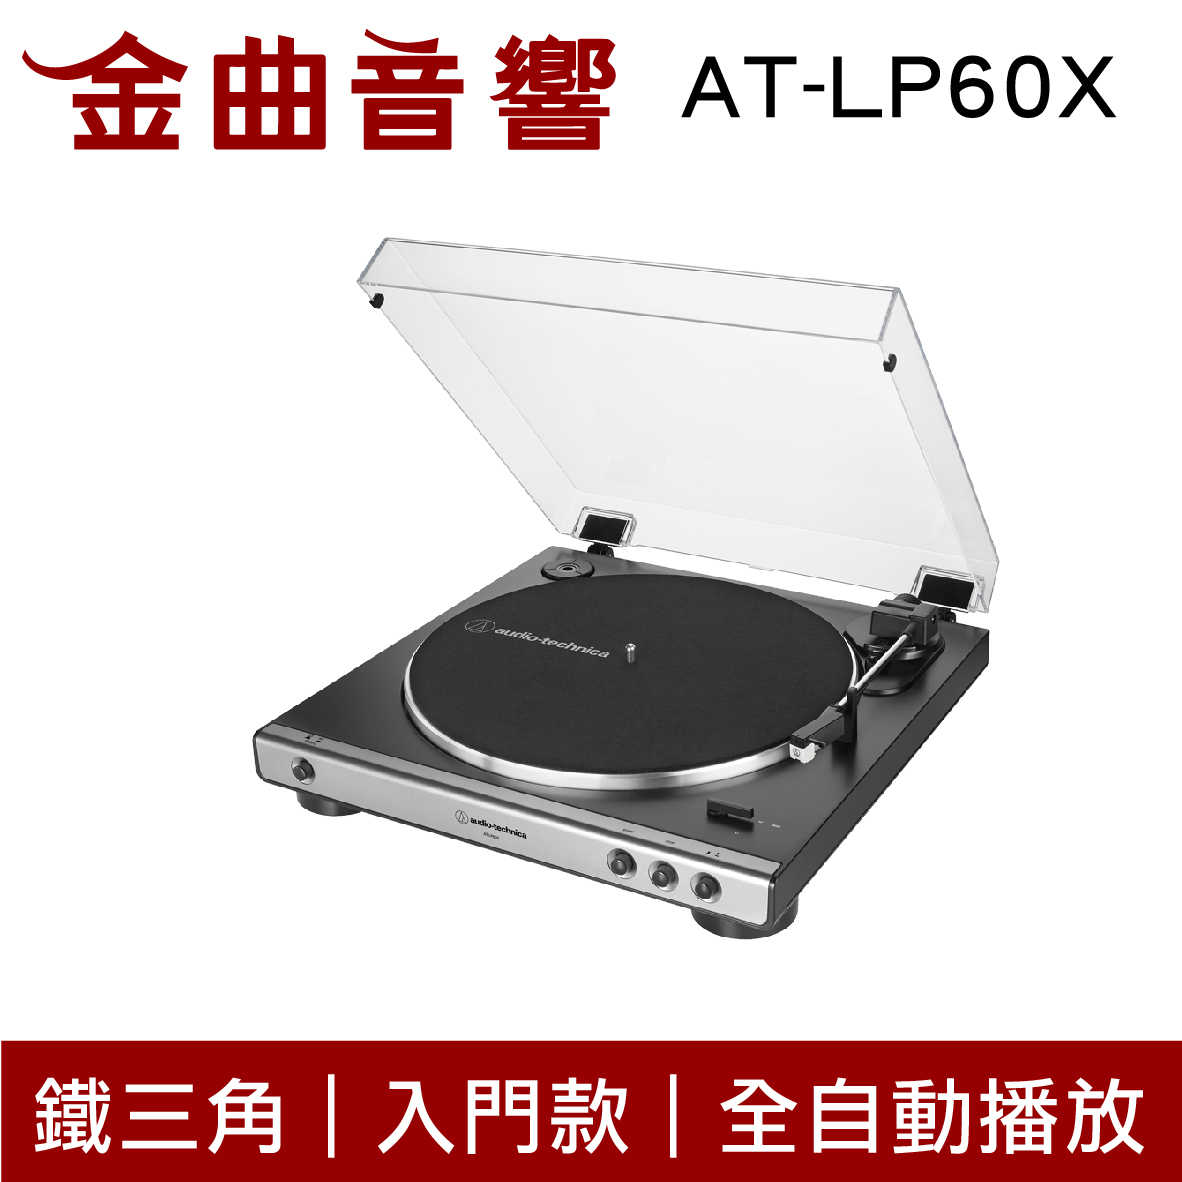 鐵三角 AT-LP60X 灰色 入門款 黑膠唱盤機 | 金曲音響